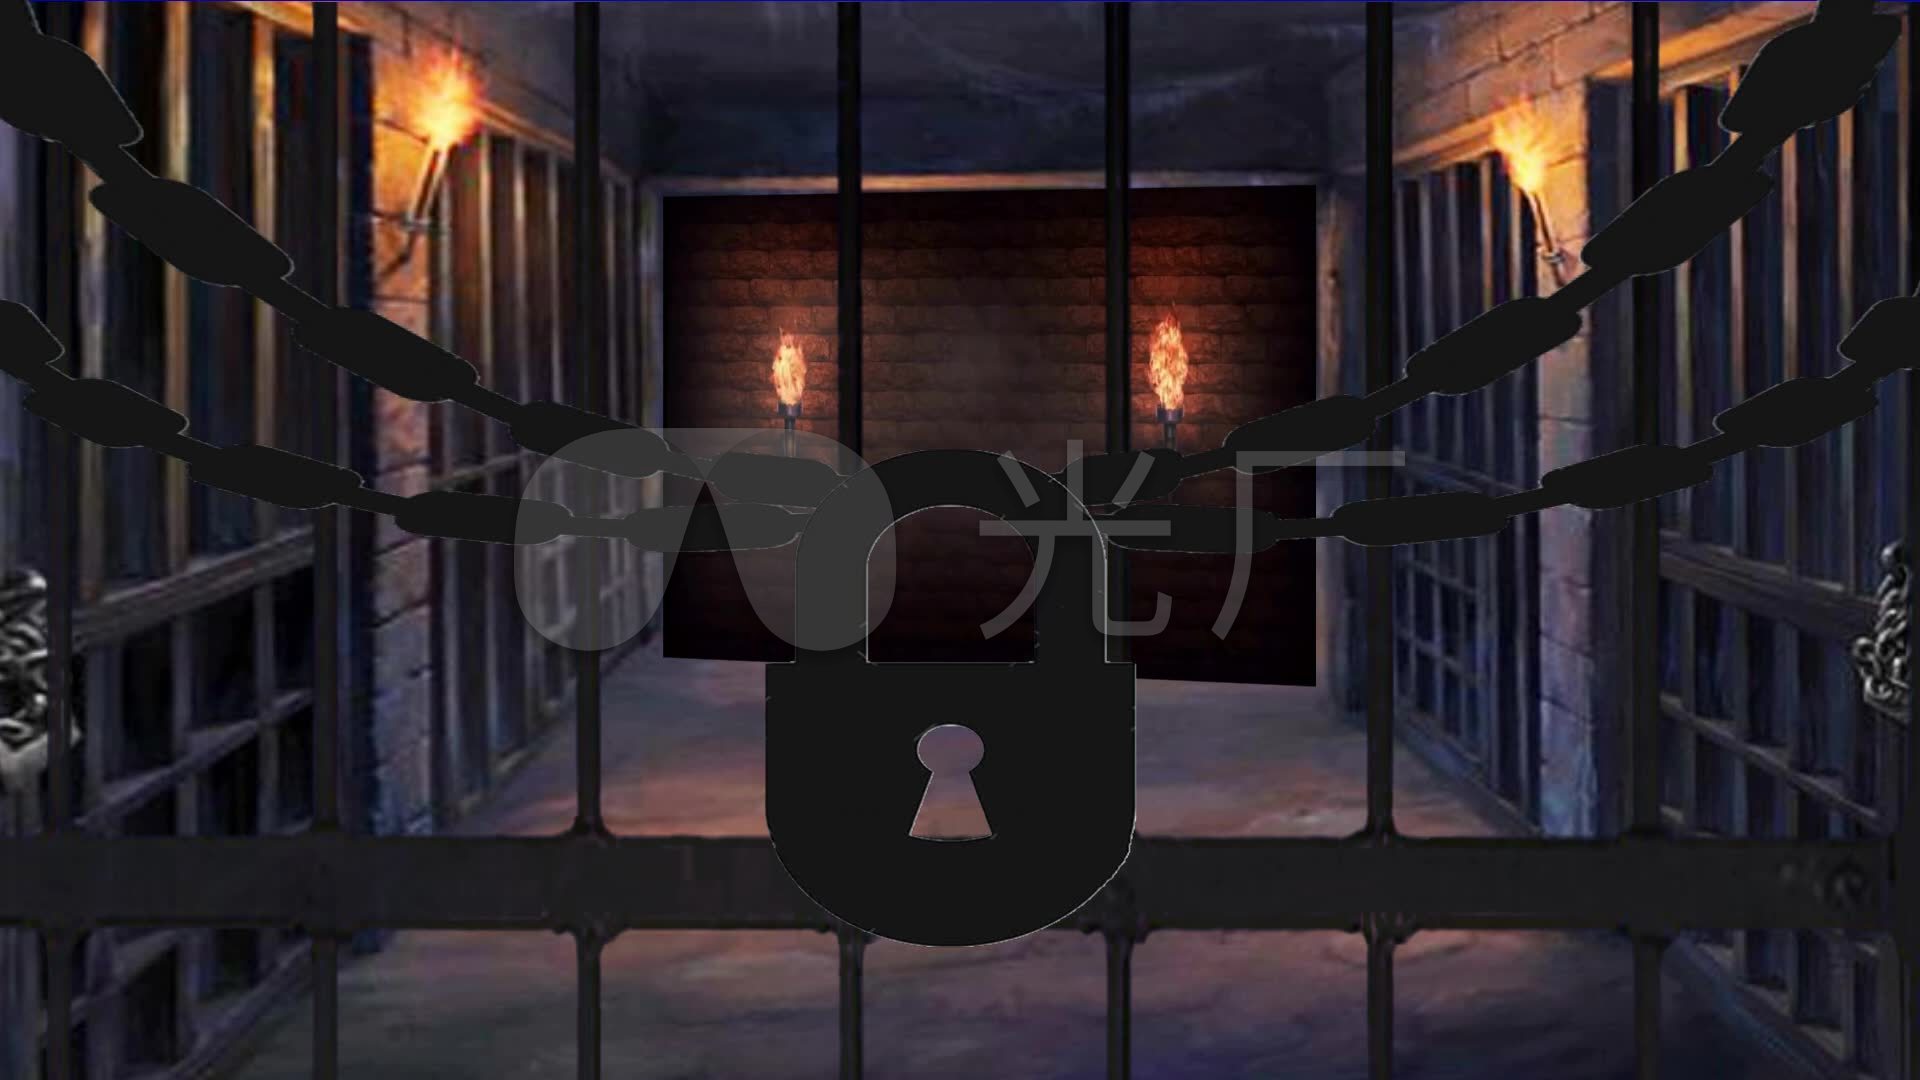 女囚犯佩带的监狱制服坐床和负面因素 库存照片. 图片 包括有 格朗基, 犯罪, 俘虏, 罪行, 囚禁, 孤独 - 92473814